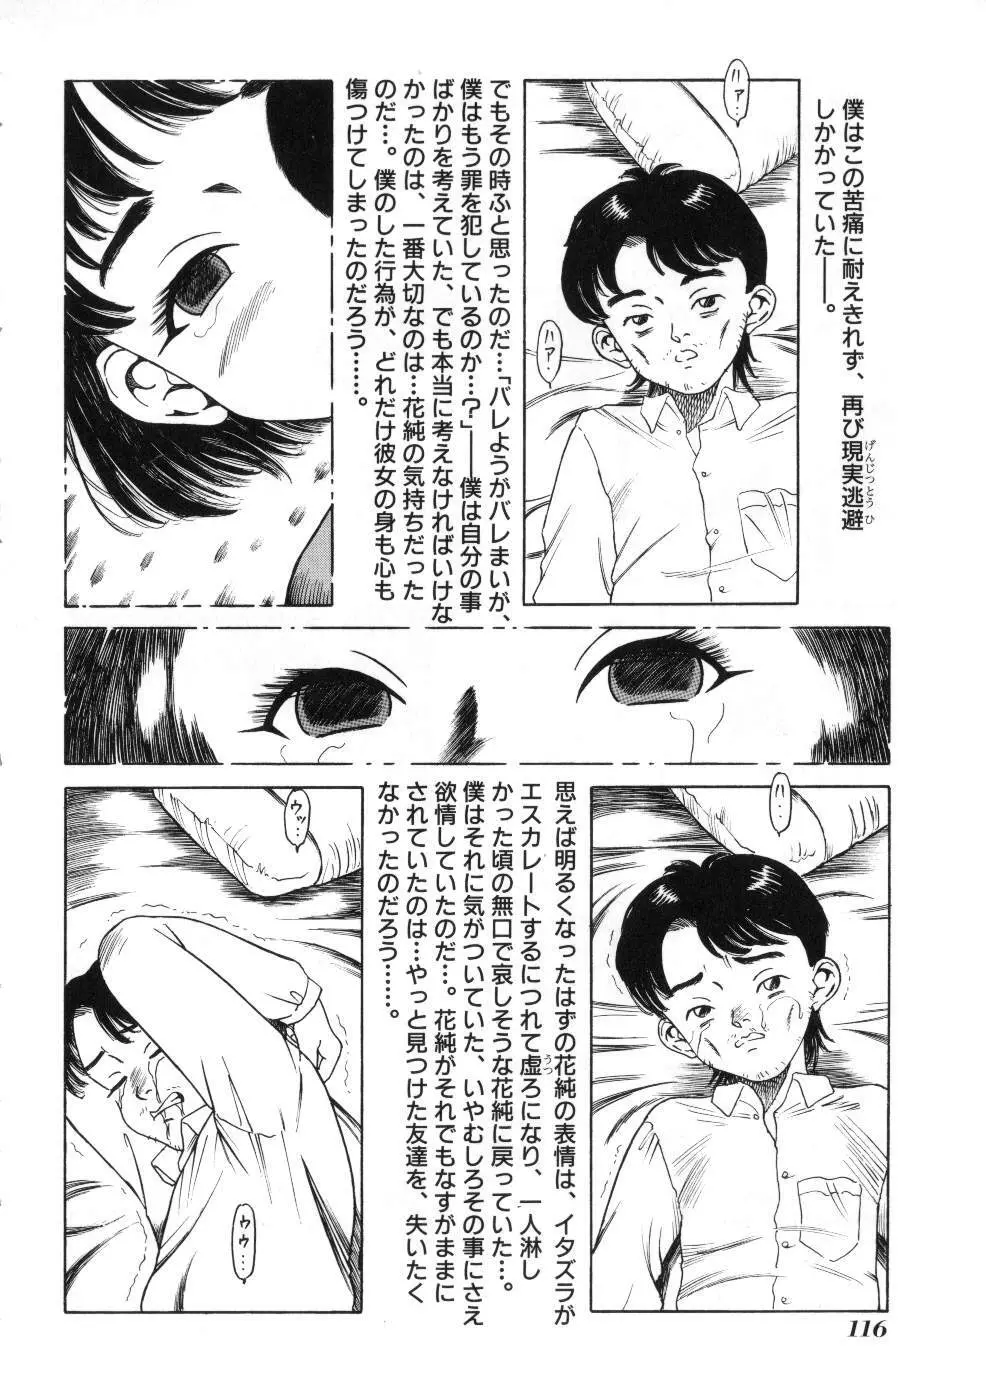 Miss ちゃいどる vol. 1 116ページ